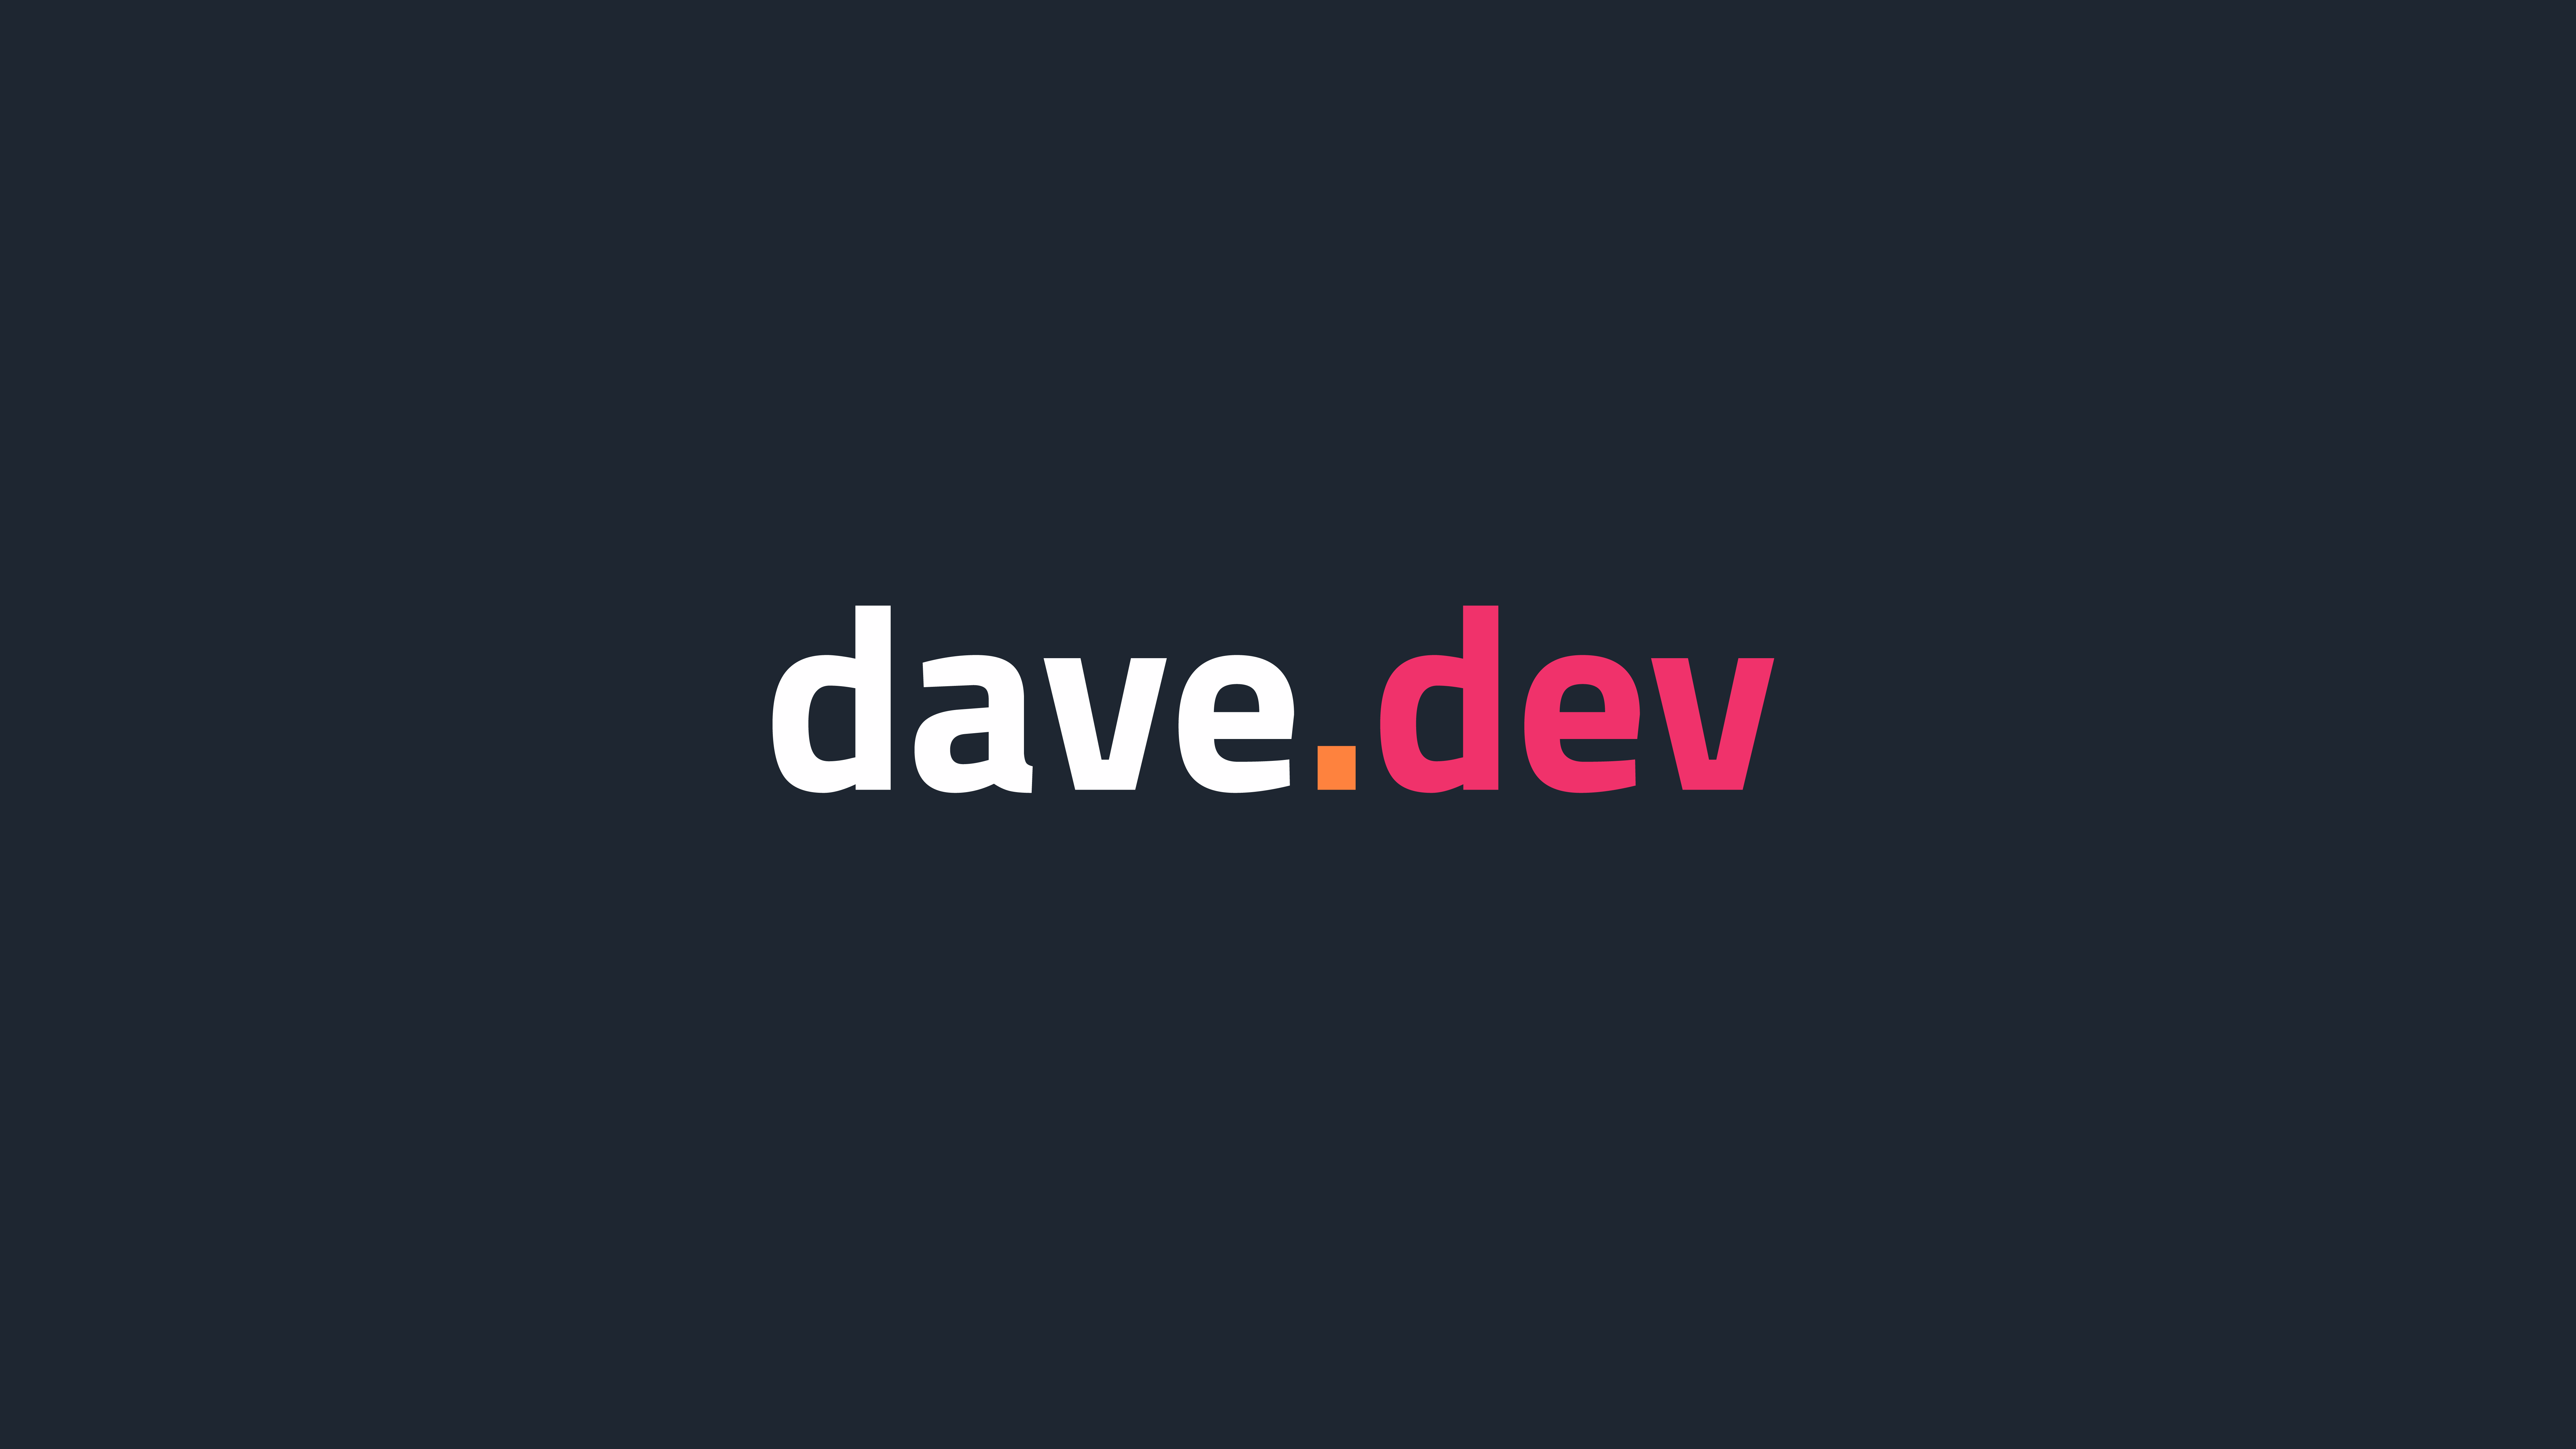 Company logo image - dave.dev